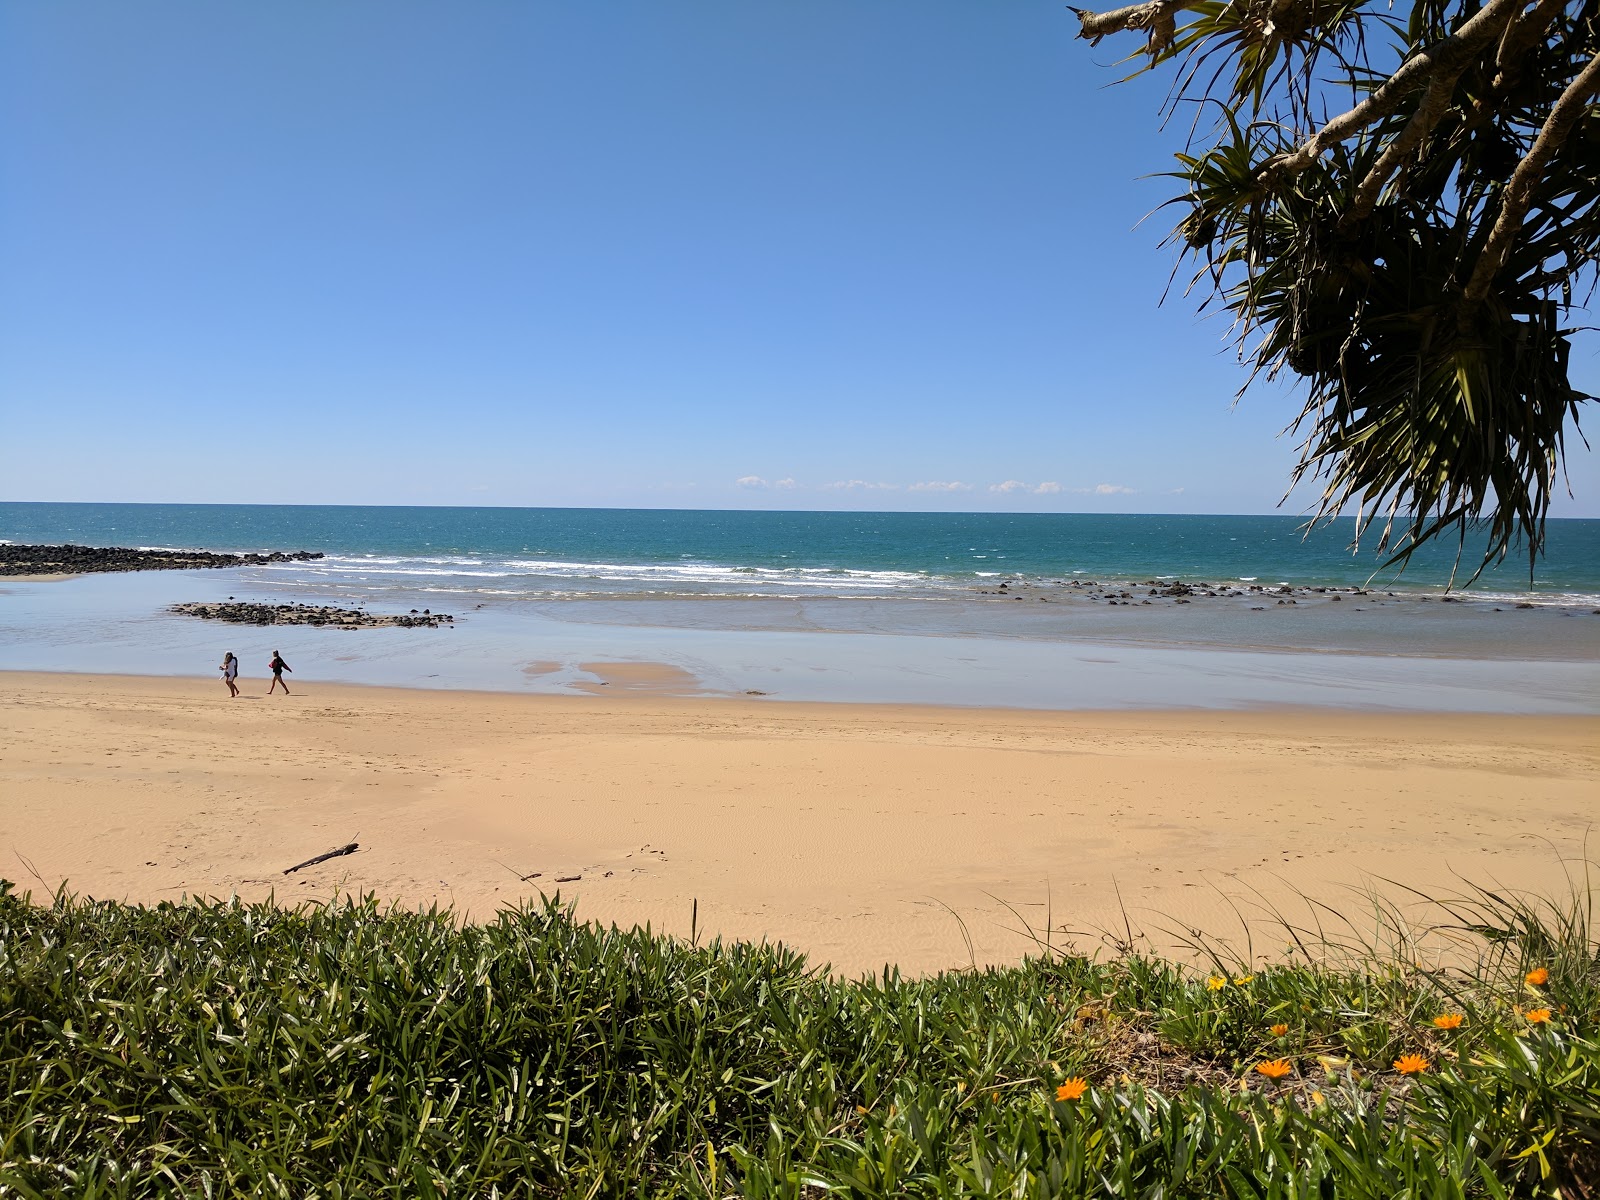 Photo de Kellys Beach - endroit populaire parmi les connaisseurs de la détente